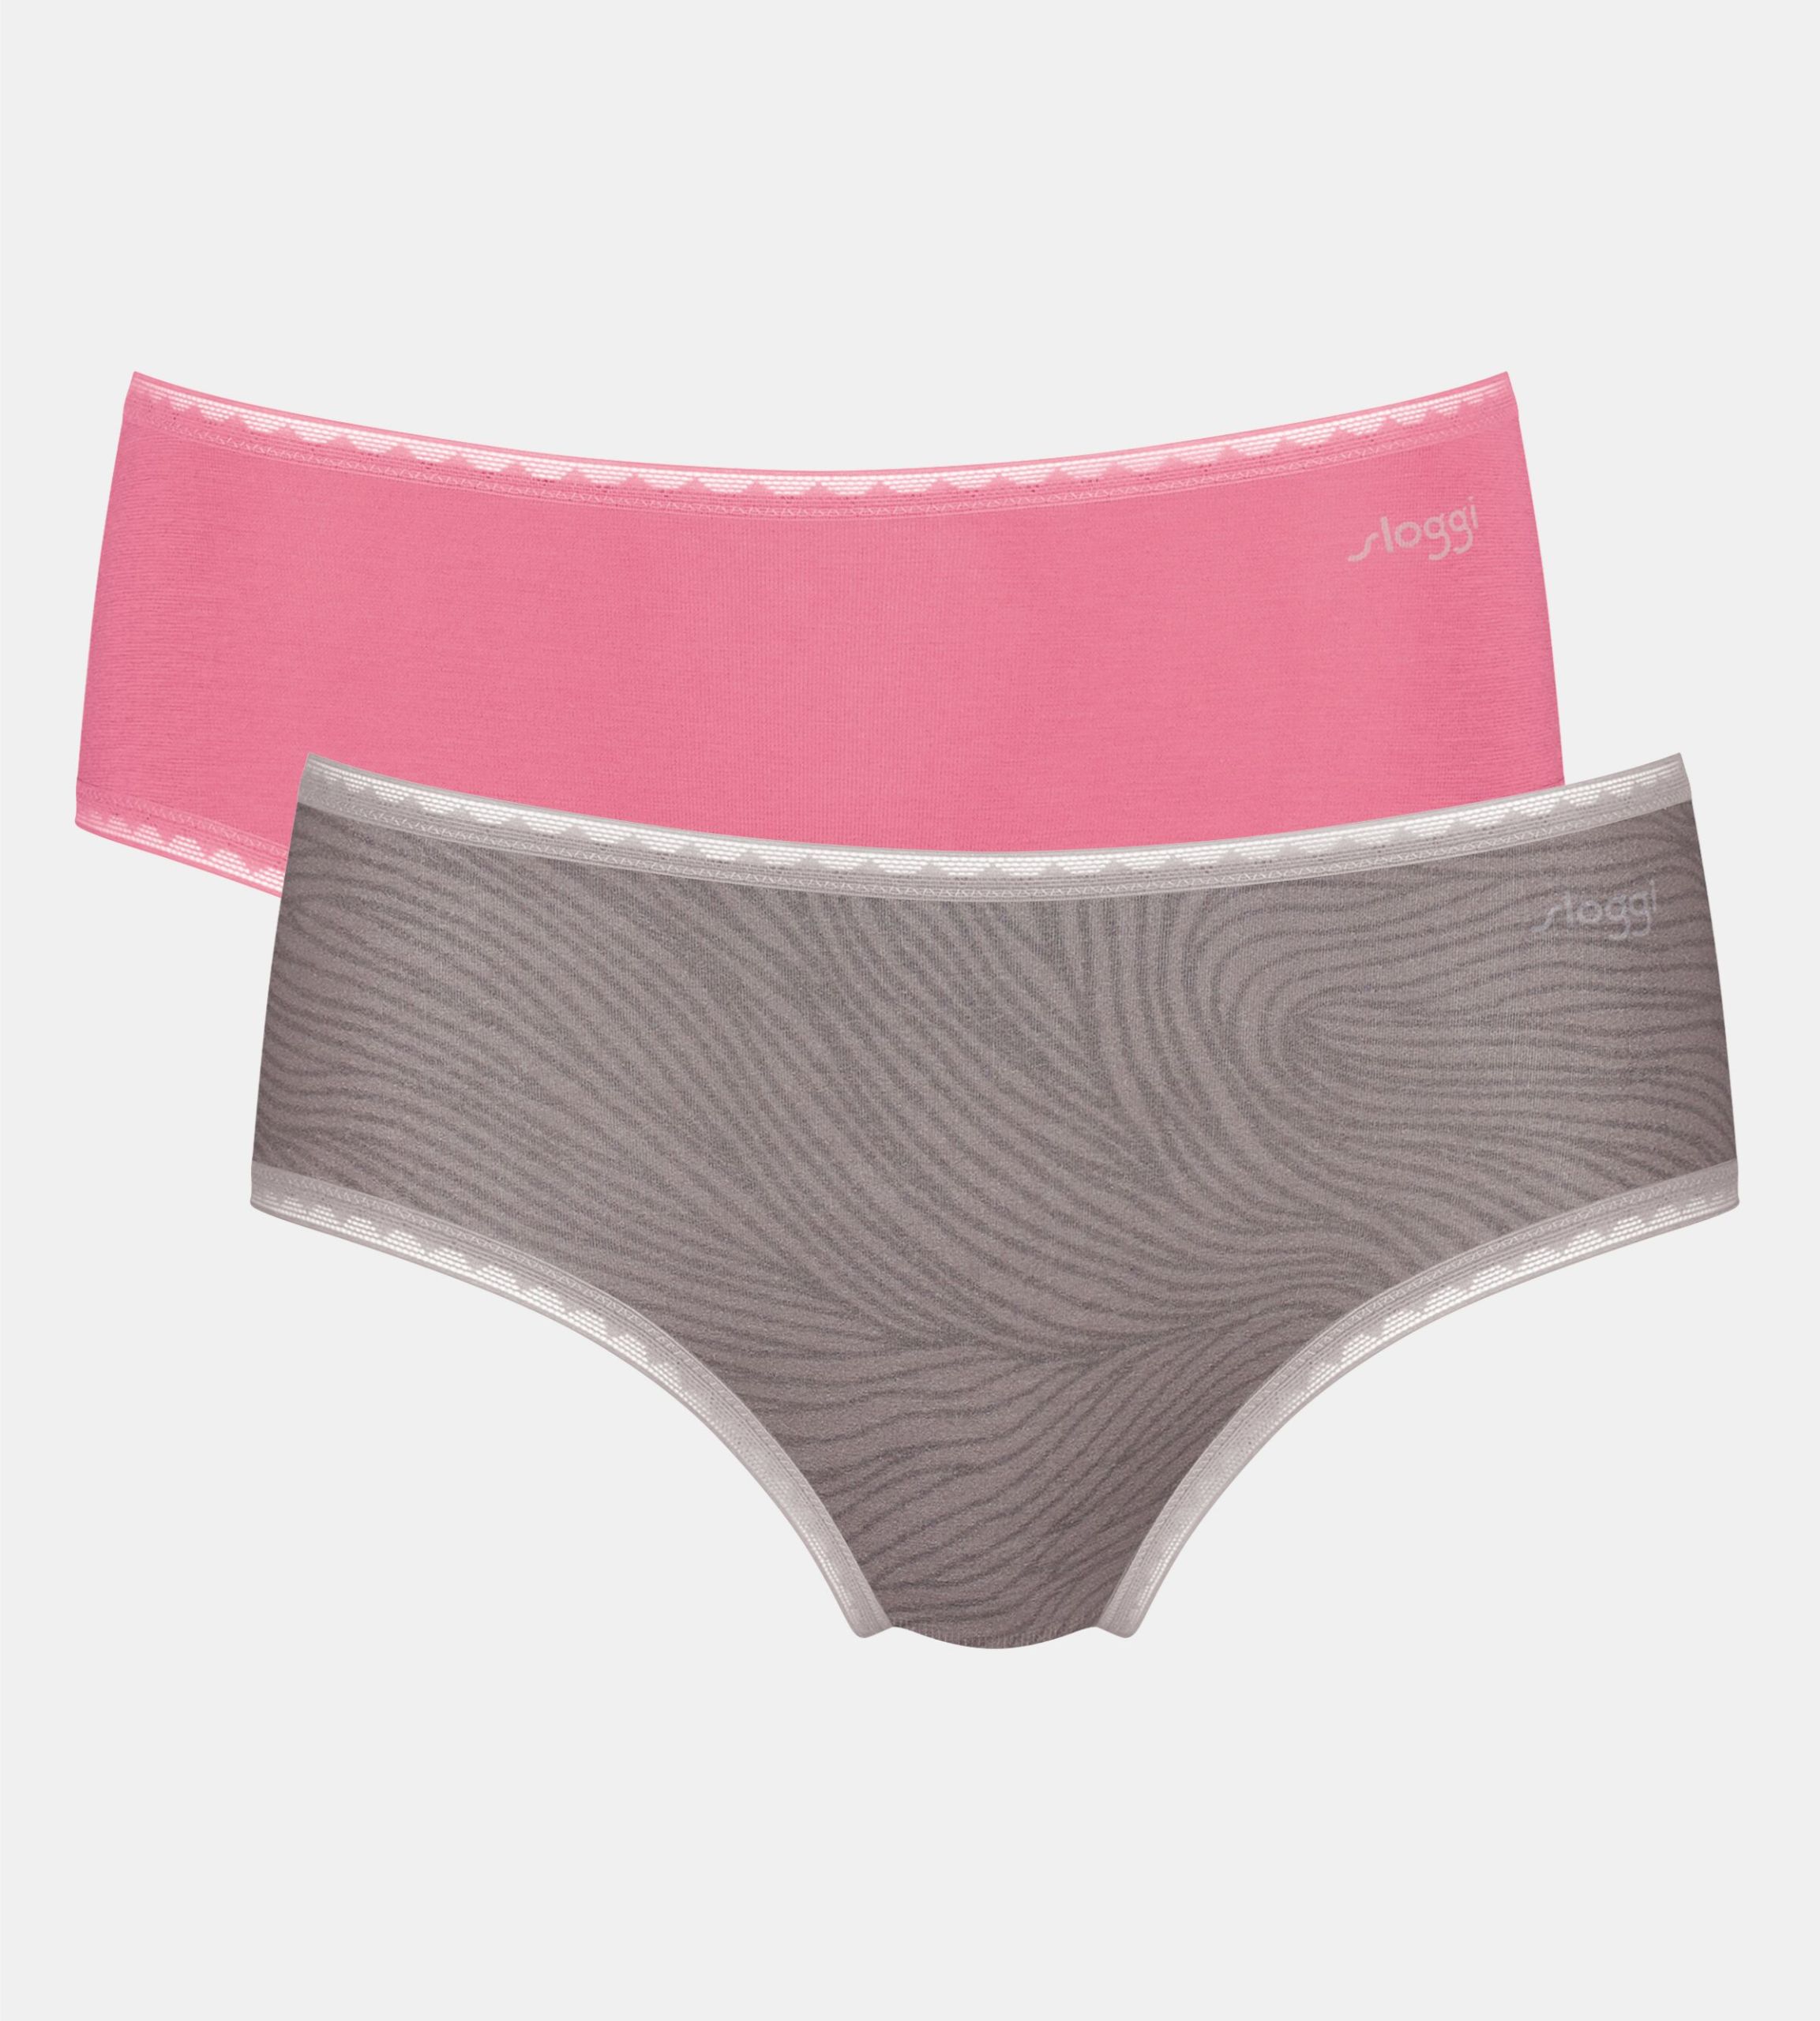 Sloggi - Triumph underwear − women's lingerie, shapewear & more